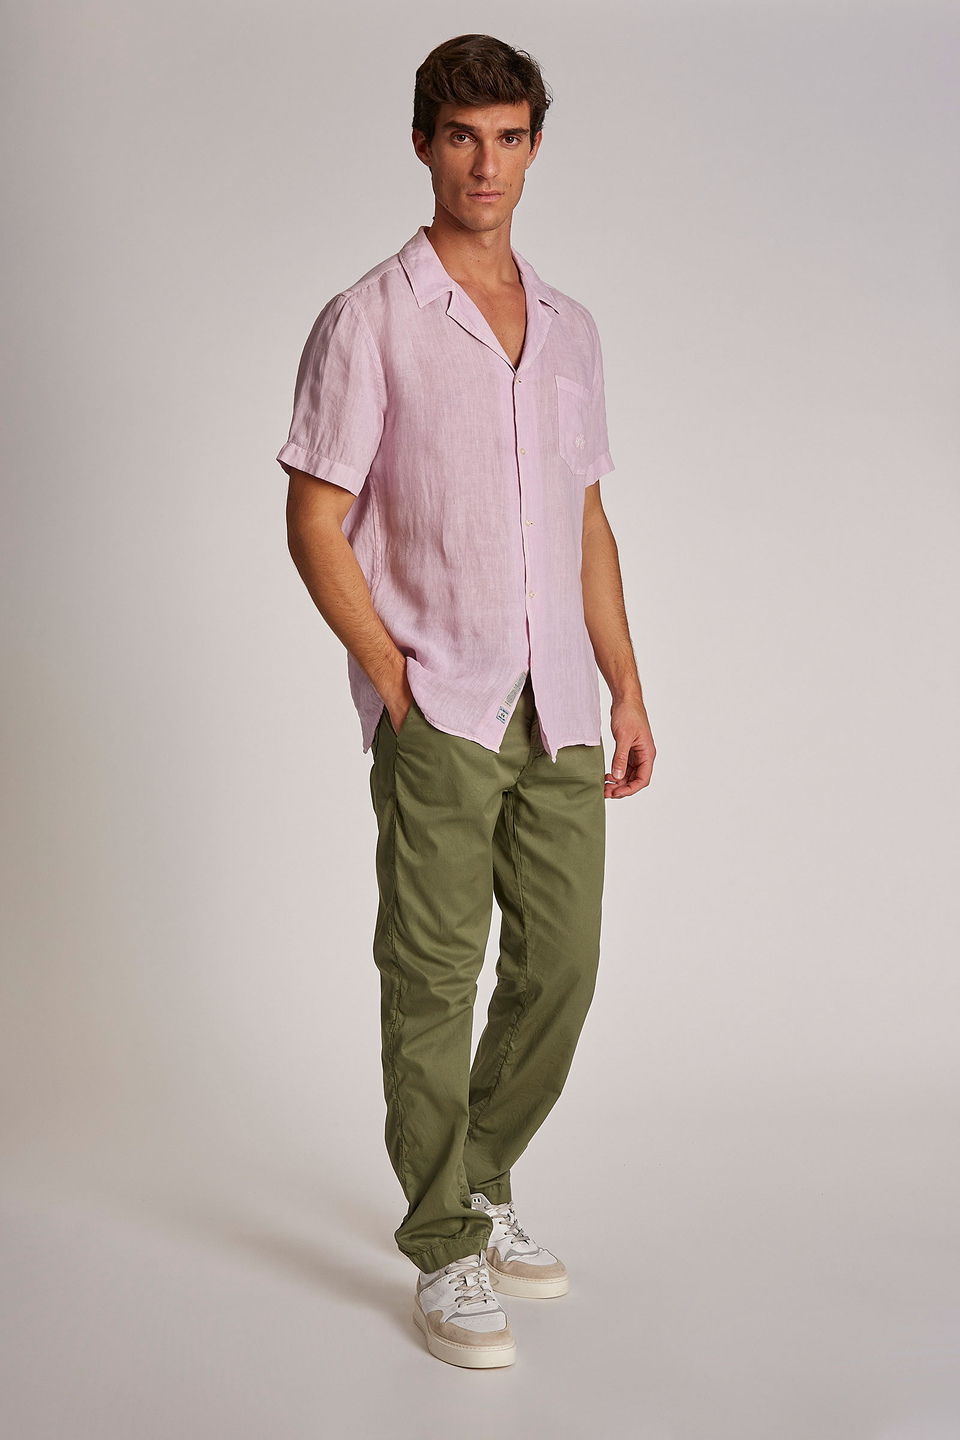 Camisa de hombre de lino, manga corta, corte regular - La Martina - Official Online Shop